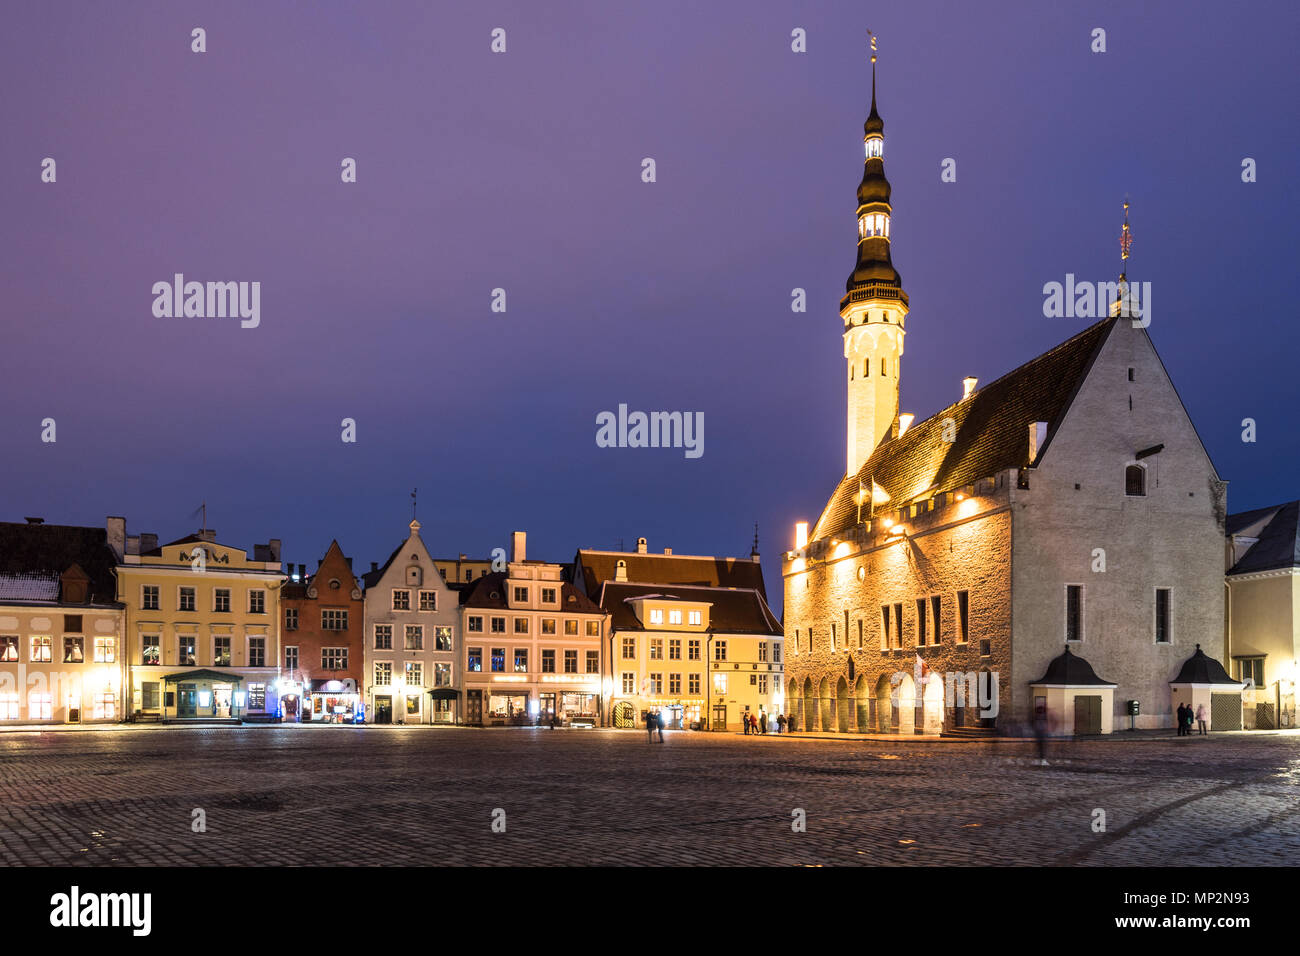 Die Tallin gotischen Rathaus auf dem Marktplatz der Altstadt bei Nacht in Estland Hauptstadt im Winter. Tallinn ist ein beliebtes Reiseziel i Stockfoto